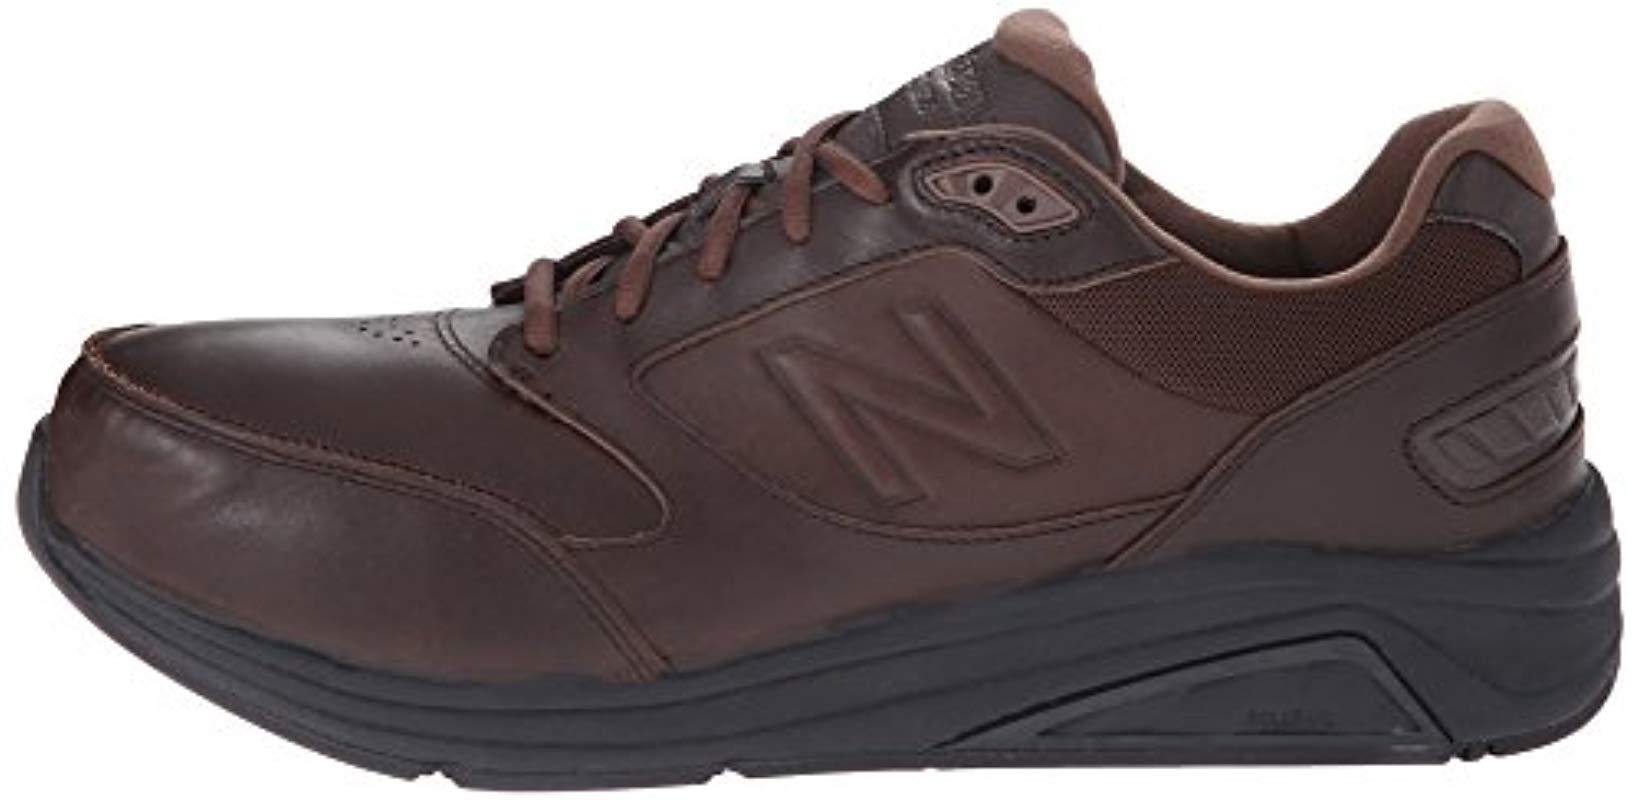 Leather Mw928v2 Walking Shoe 